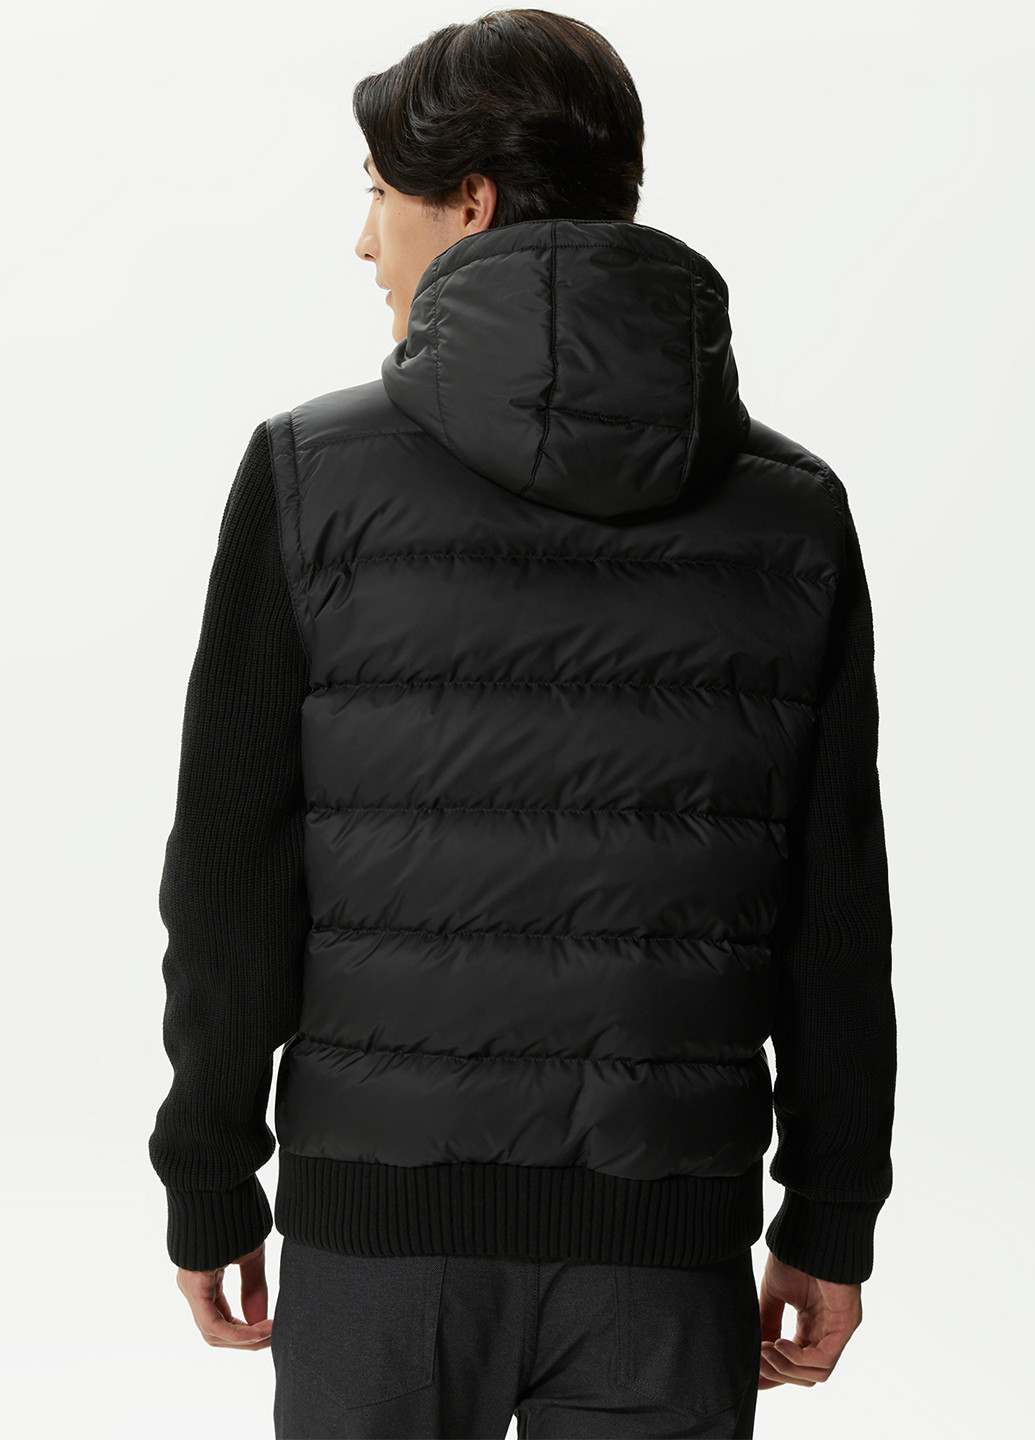 Черная демисезонная куртка куртка-трансформер Lacoste